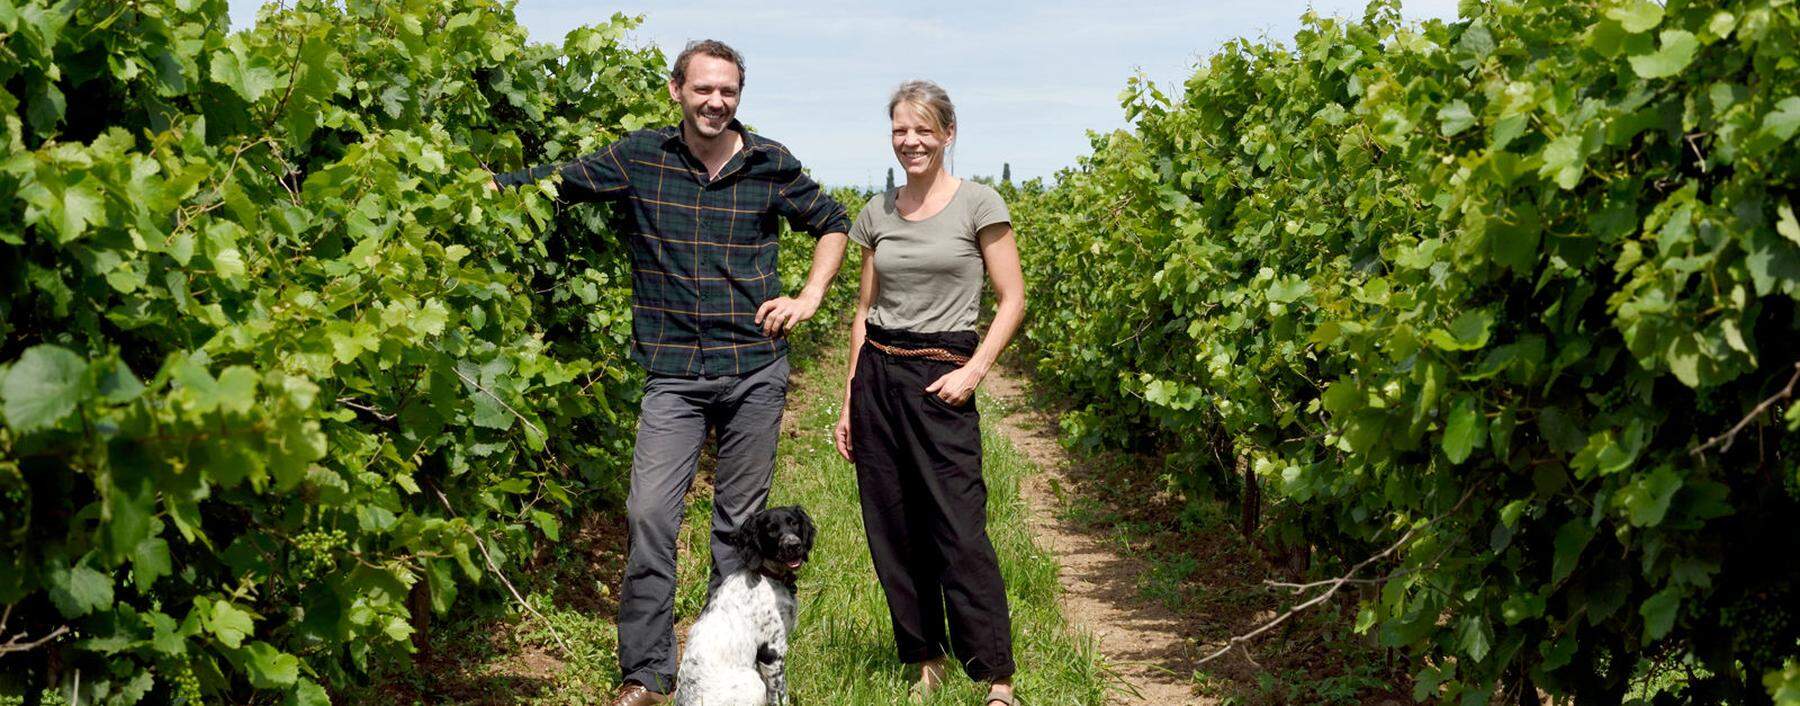 Werner und Angela Michlits (mit Hund Nala) im Weingarten, bei den wild wachsenden Reben.